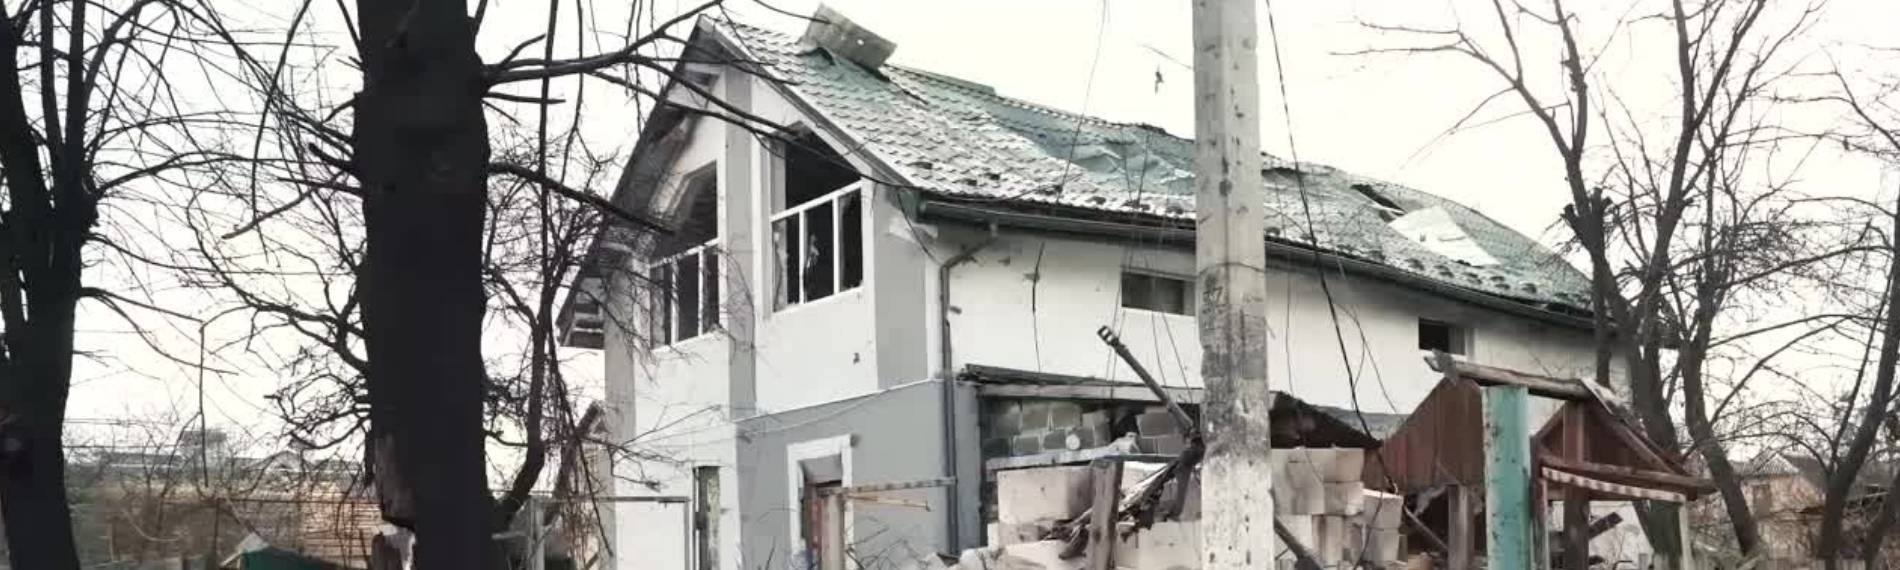 zerstörtes ukrainisches Haus im Ukraine Krieg